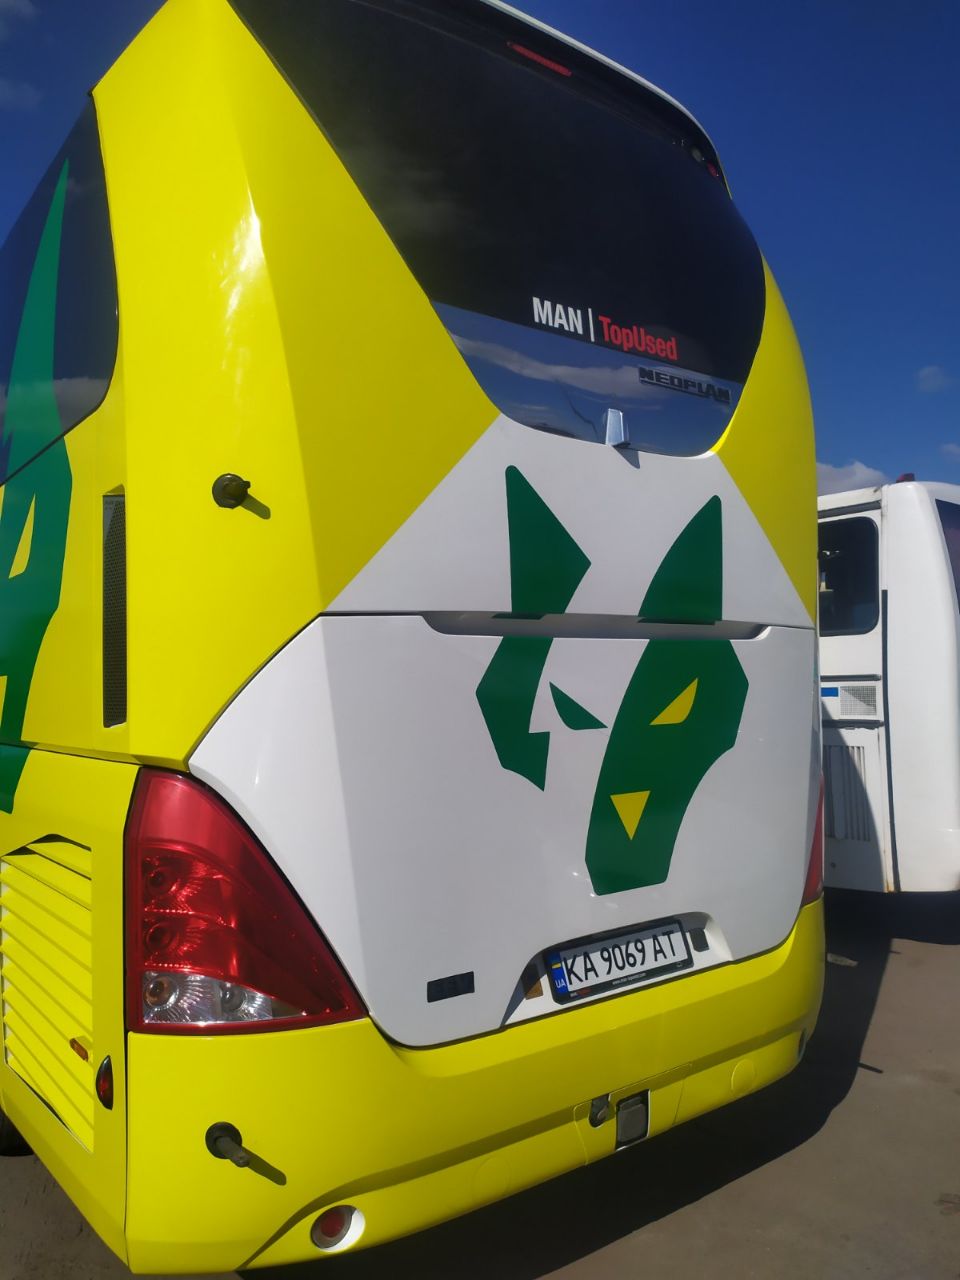 У Житомирі показали новий клубний автобус ФК Полісся після брендування. ФОТО Фото 3